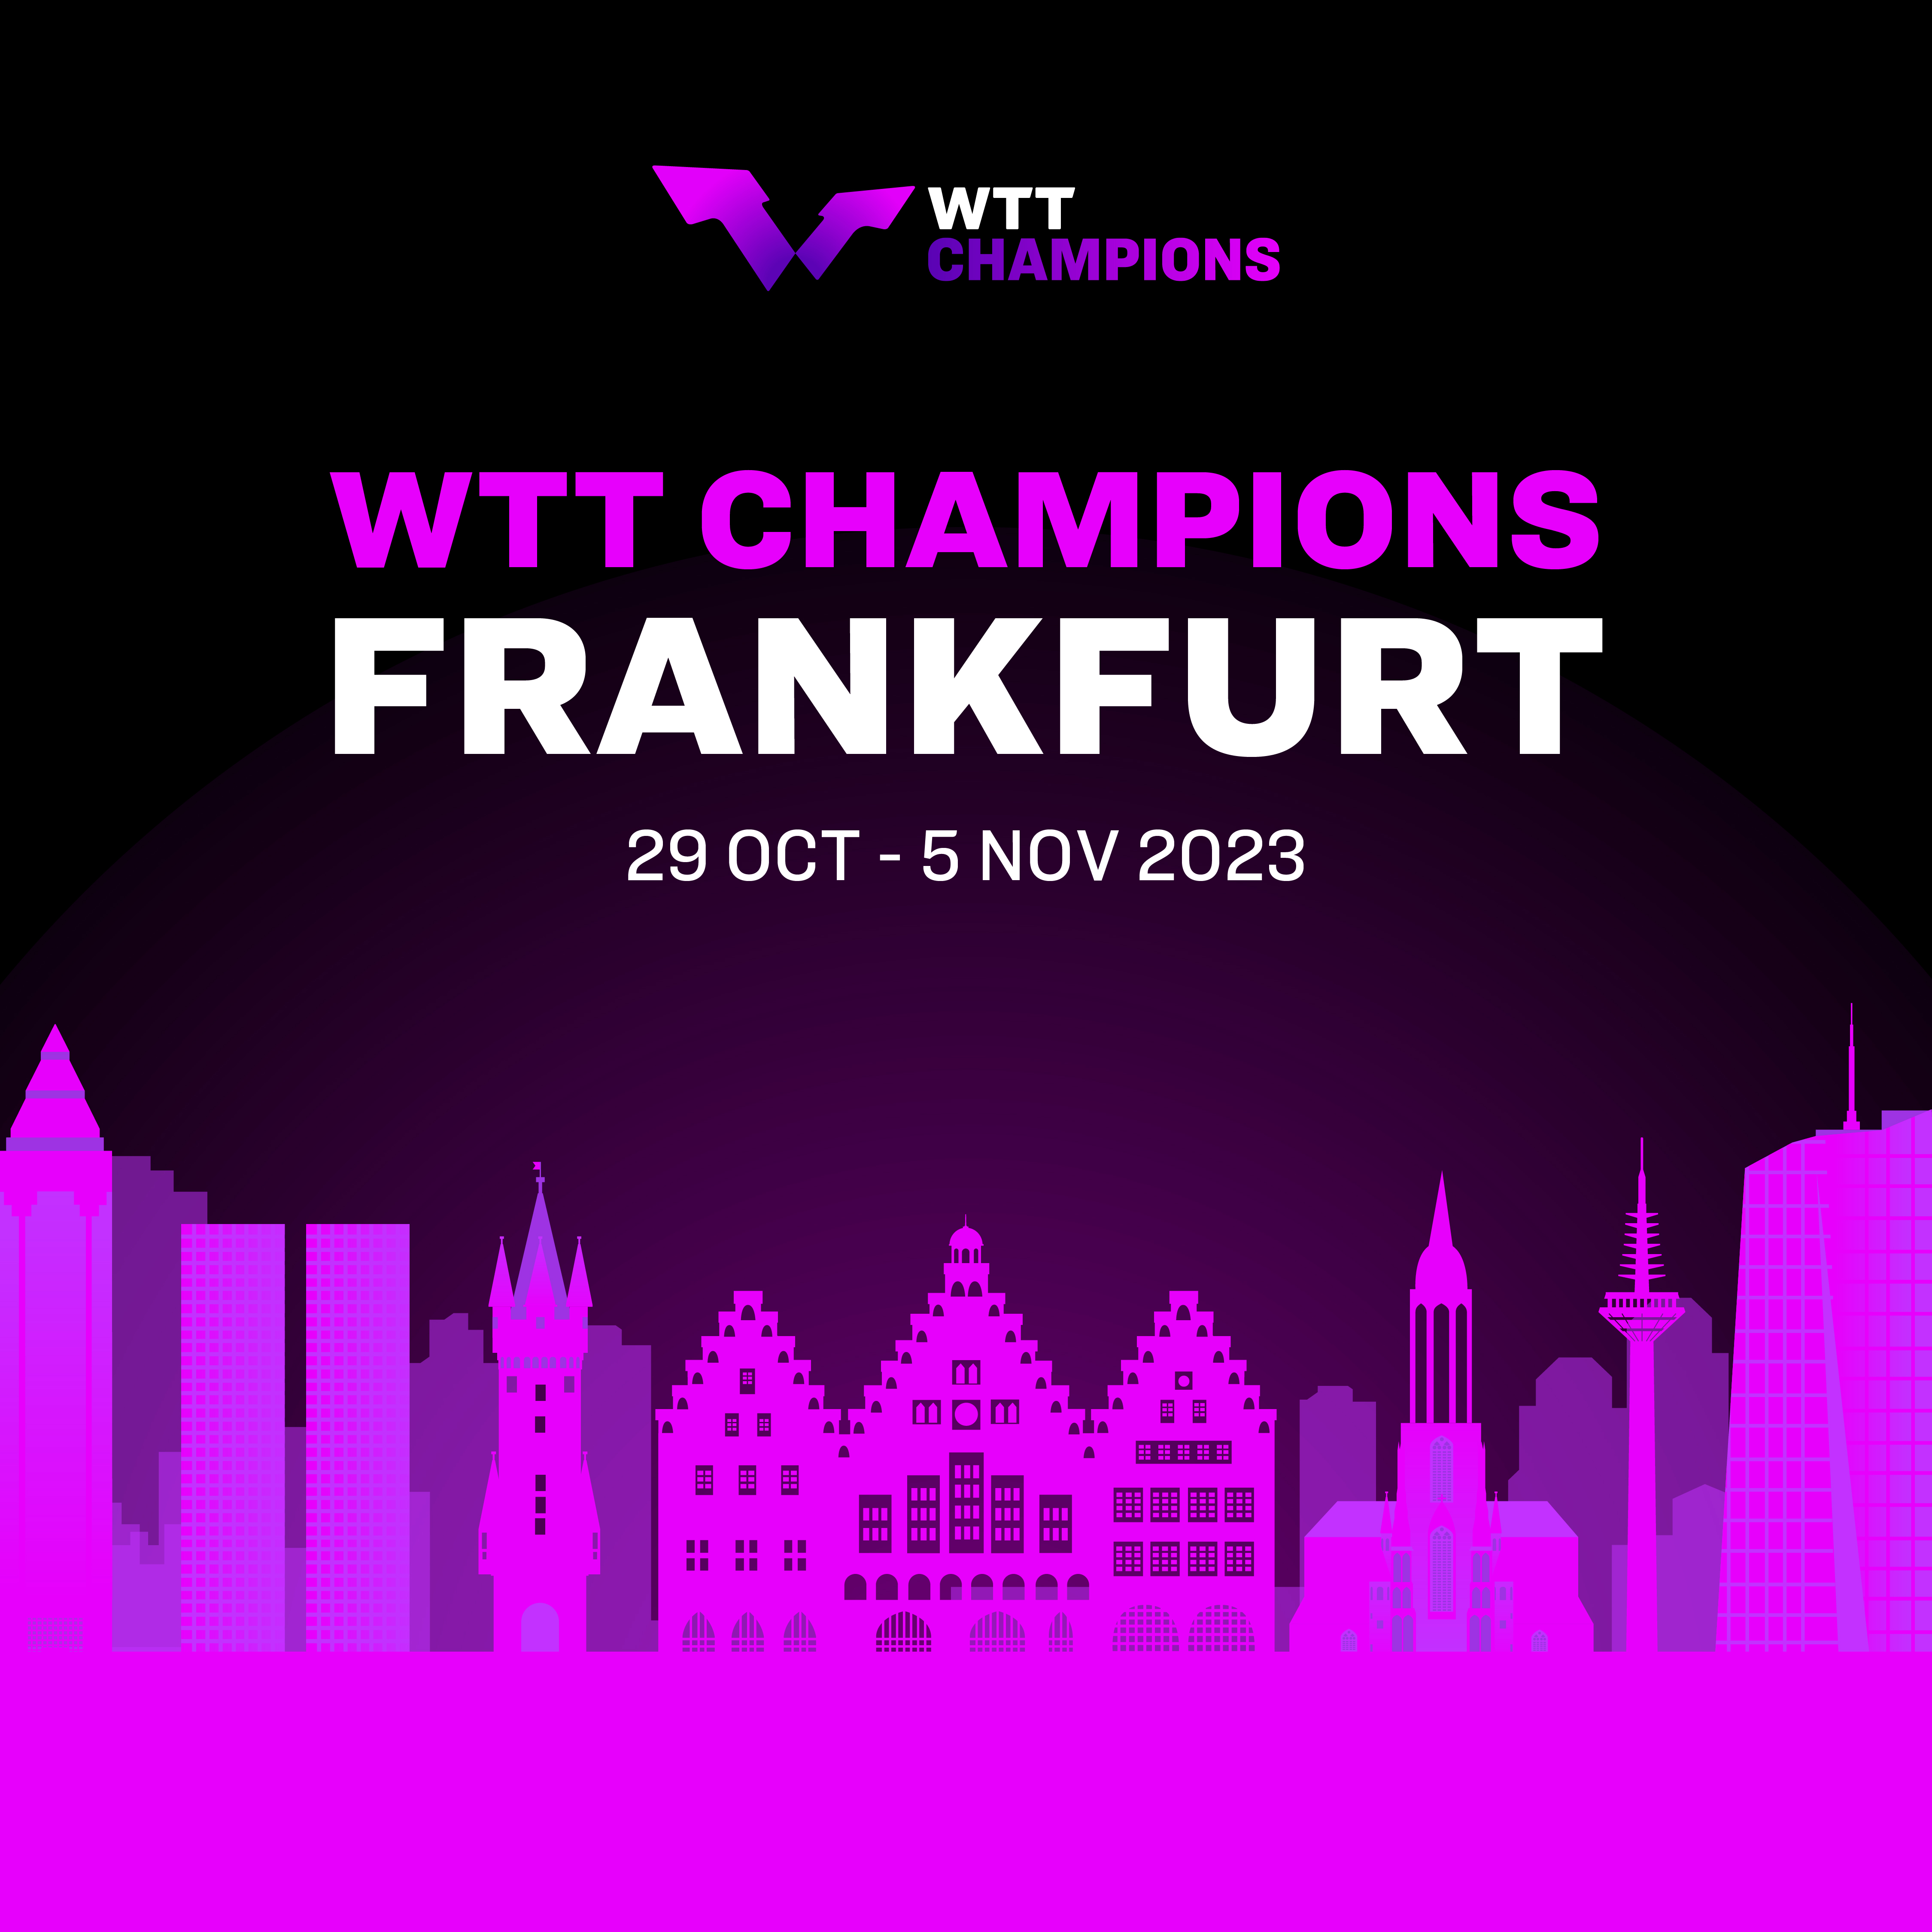 WTT Champions Frankfurt Vorverkaufsstart für alle "Besser als bei